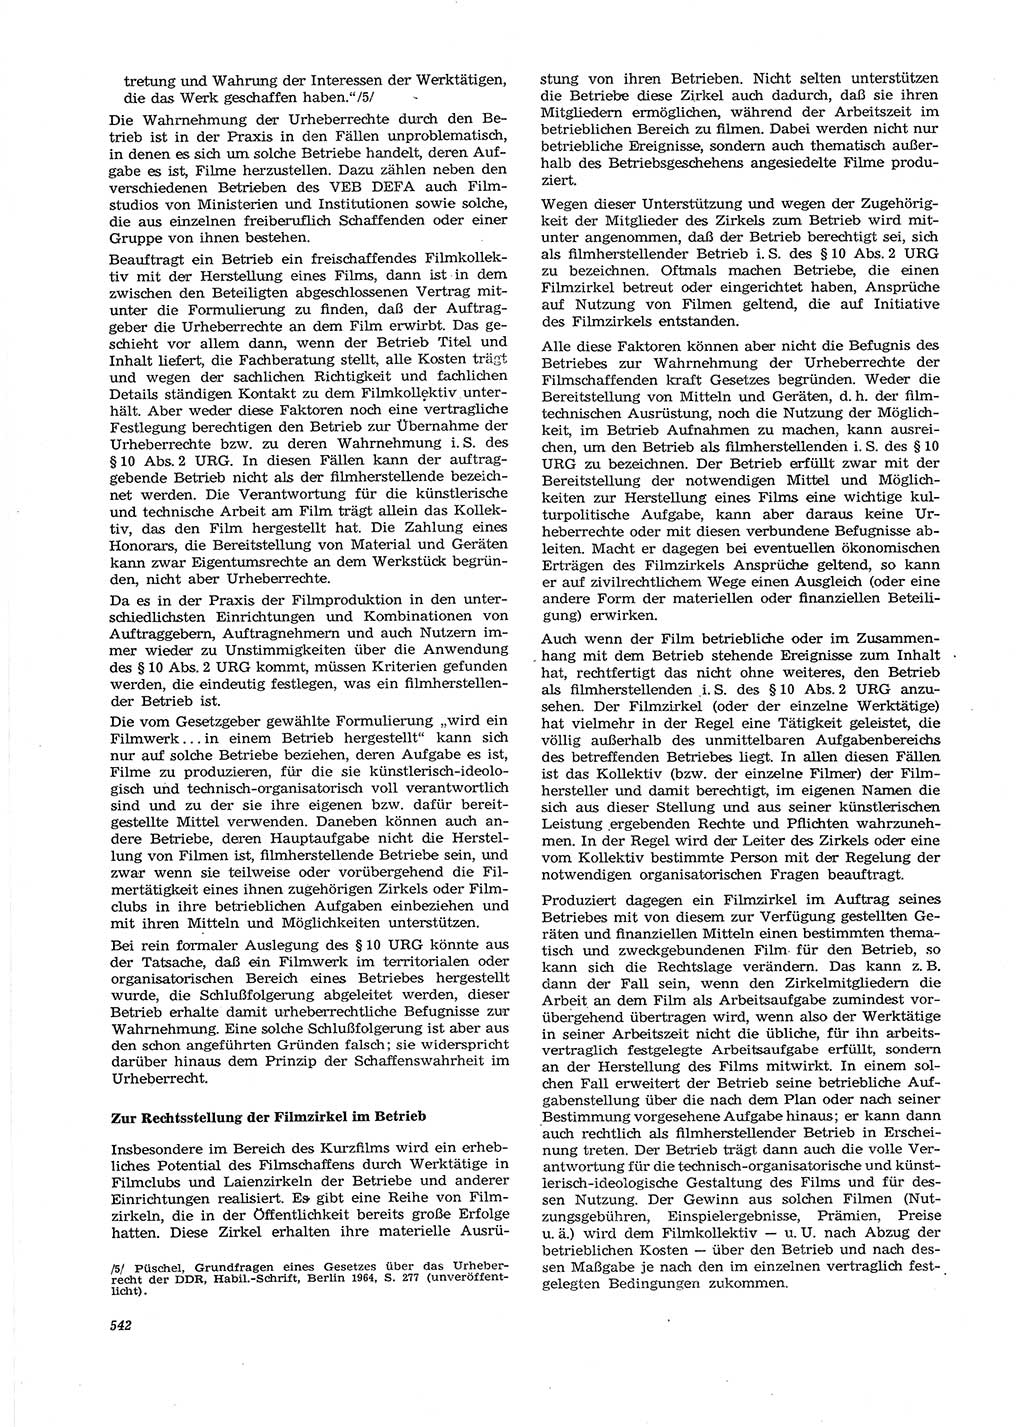 Neue Justiz (NJ), Zeitschrift für Recht und Rechtswissenschaft [Deutsche Demokratische Republik (DDR)], 27. Jahrgang 1973, Seite 542 (NJ DDR 1973, S. 542)